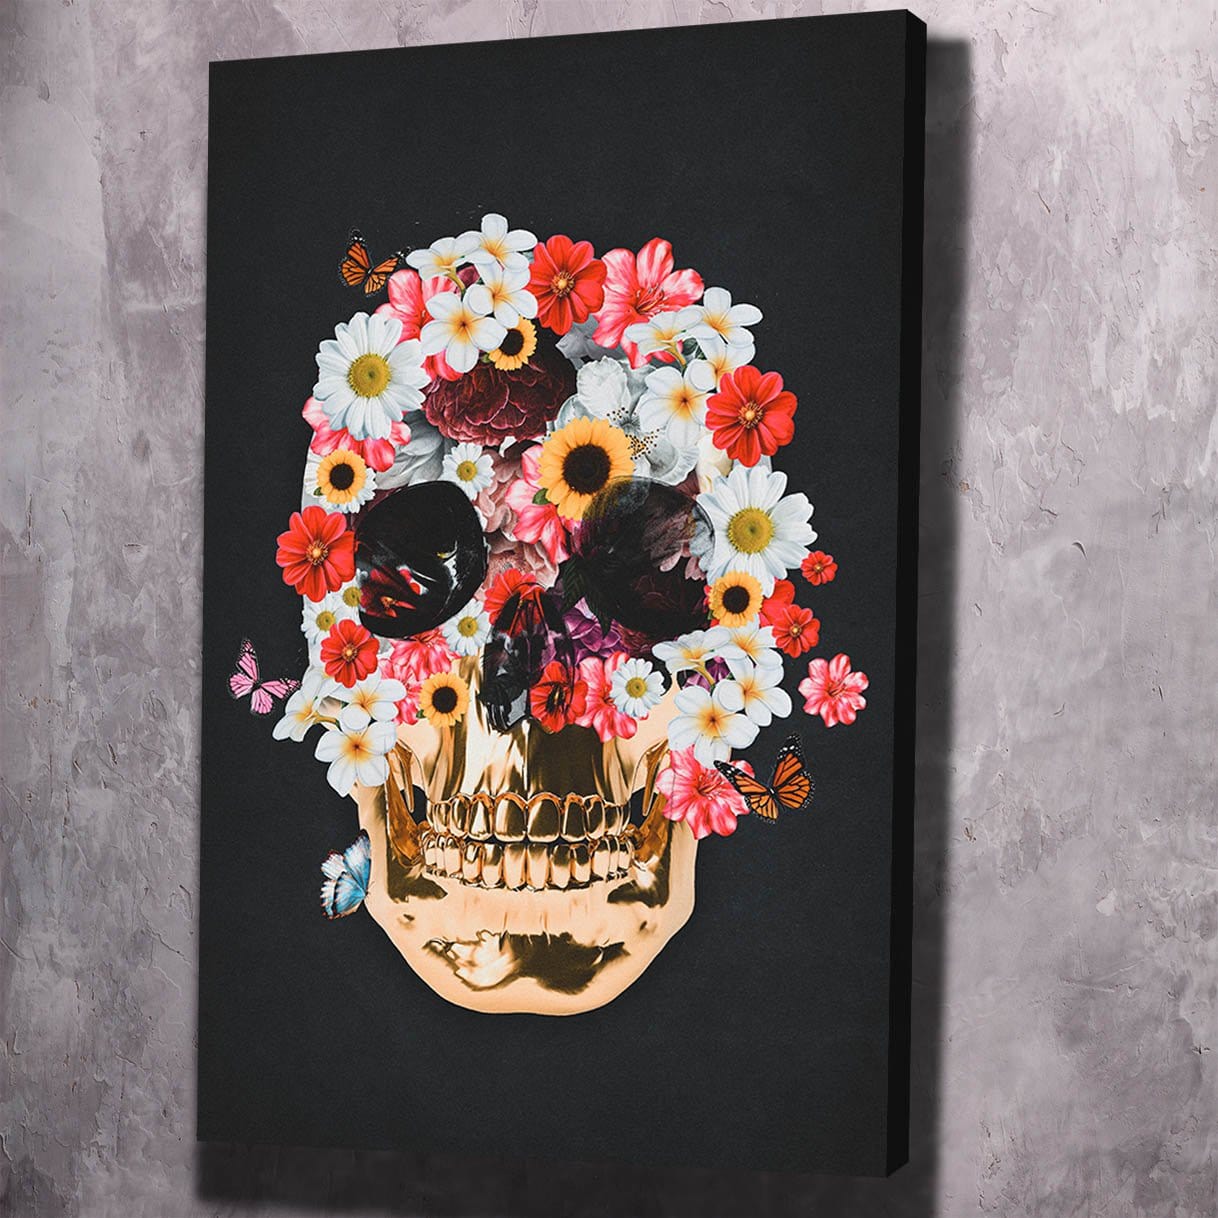 Flower Skull Wall Art | Inspirational Wall Art Motivational Wall Art Quotes Office Art | ImpaktMaker Exclusive Canvas Art Portrait